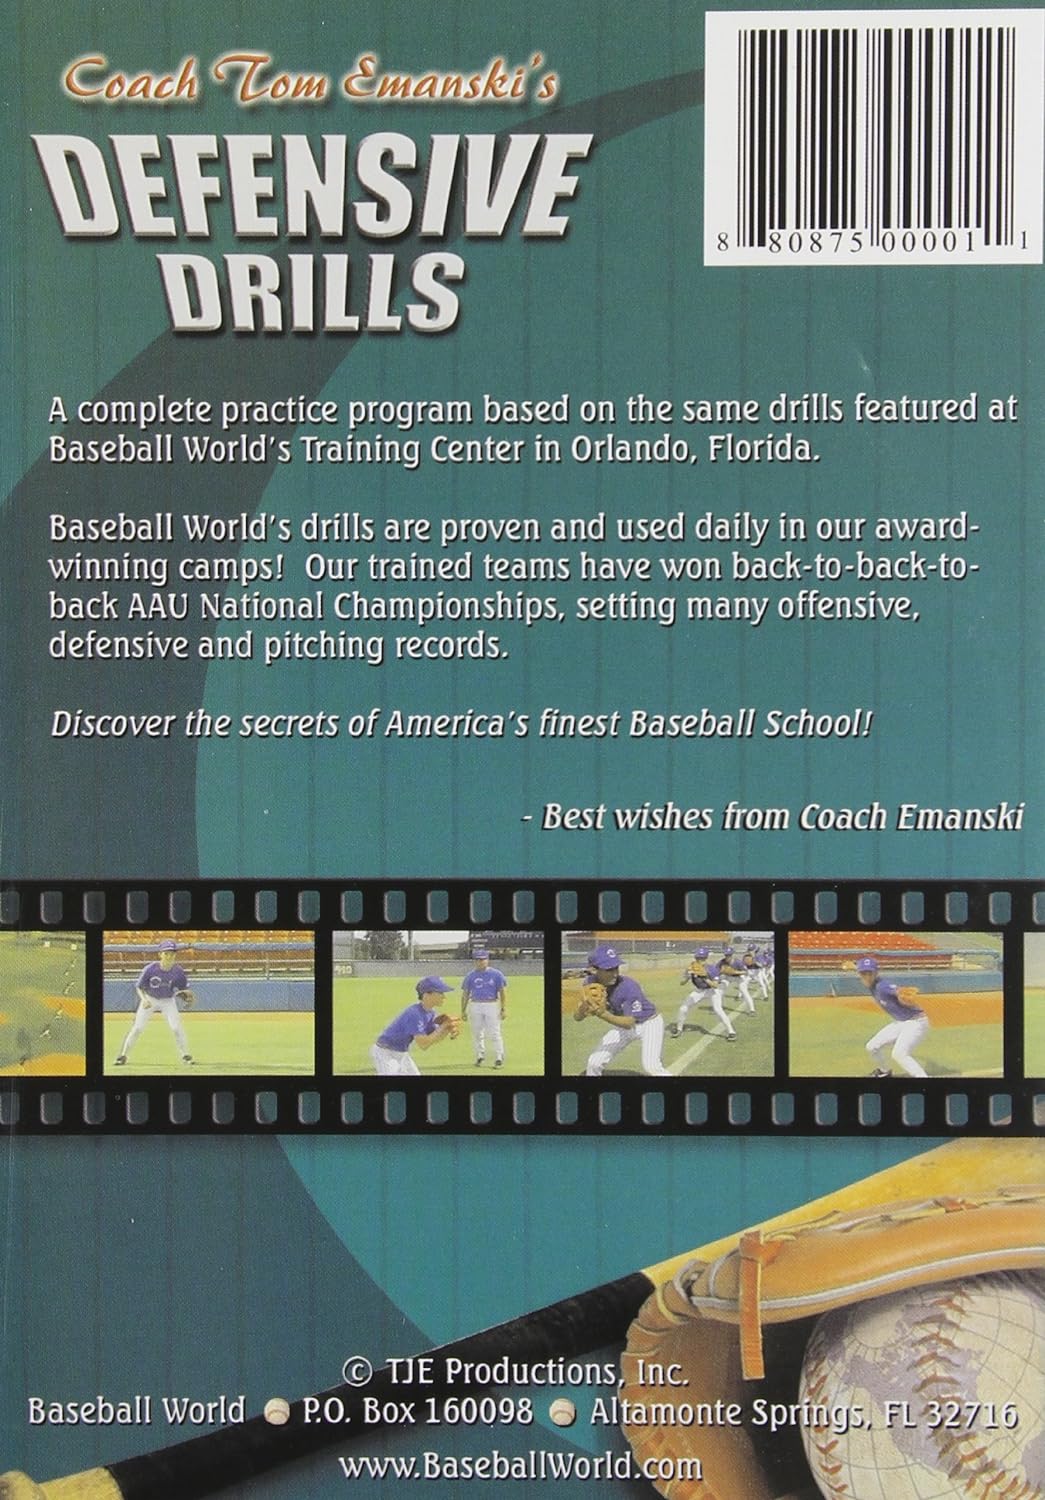 Tom Emanski's Defensive Baseball Drills